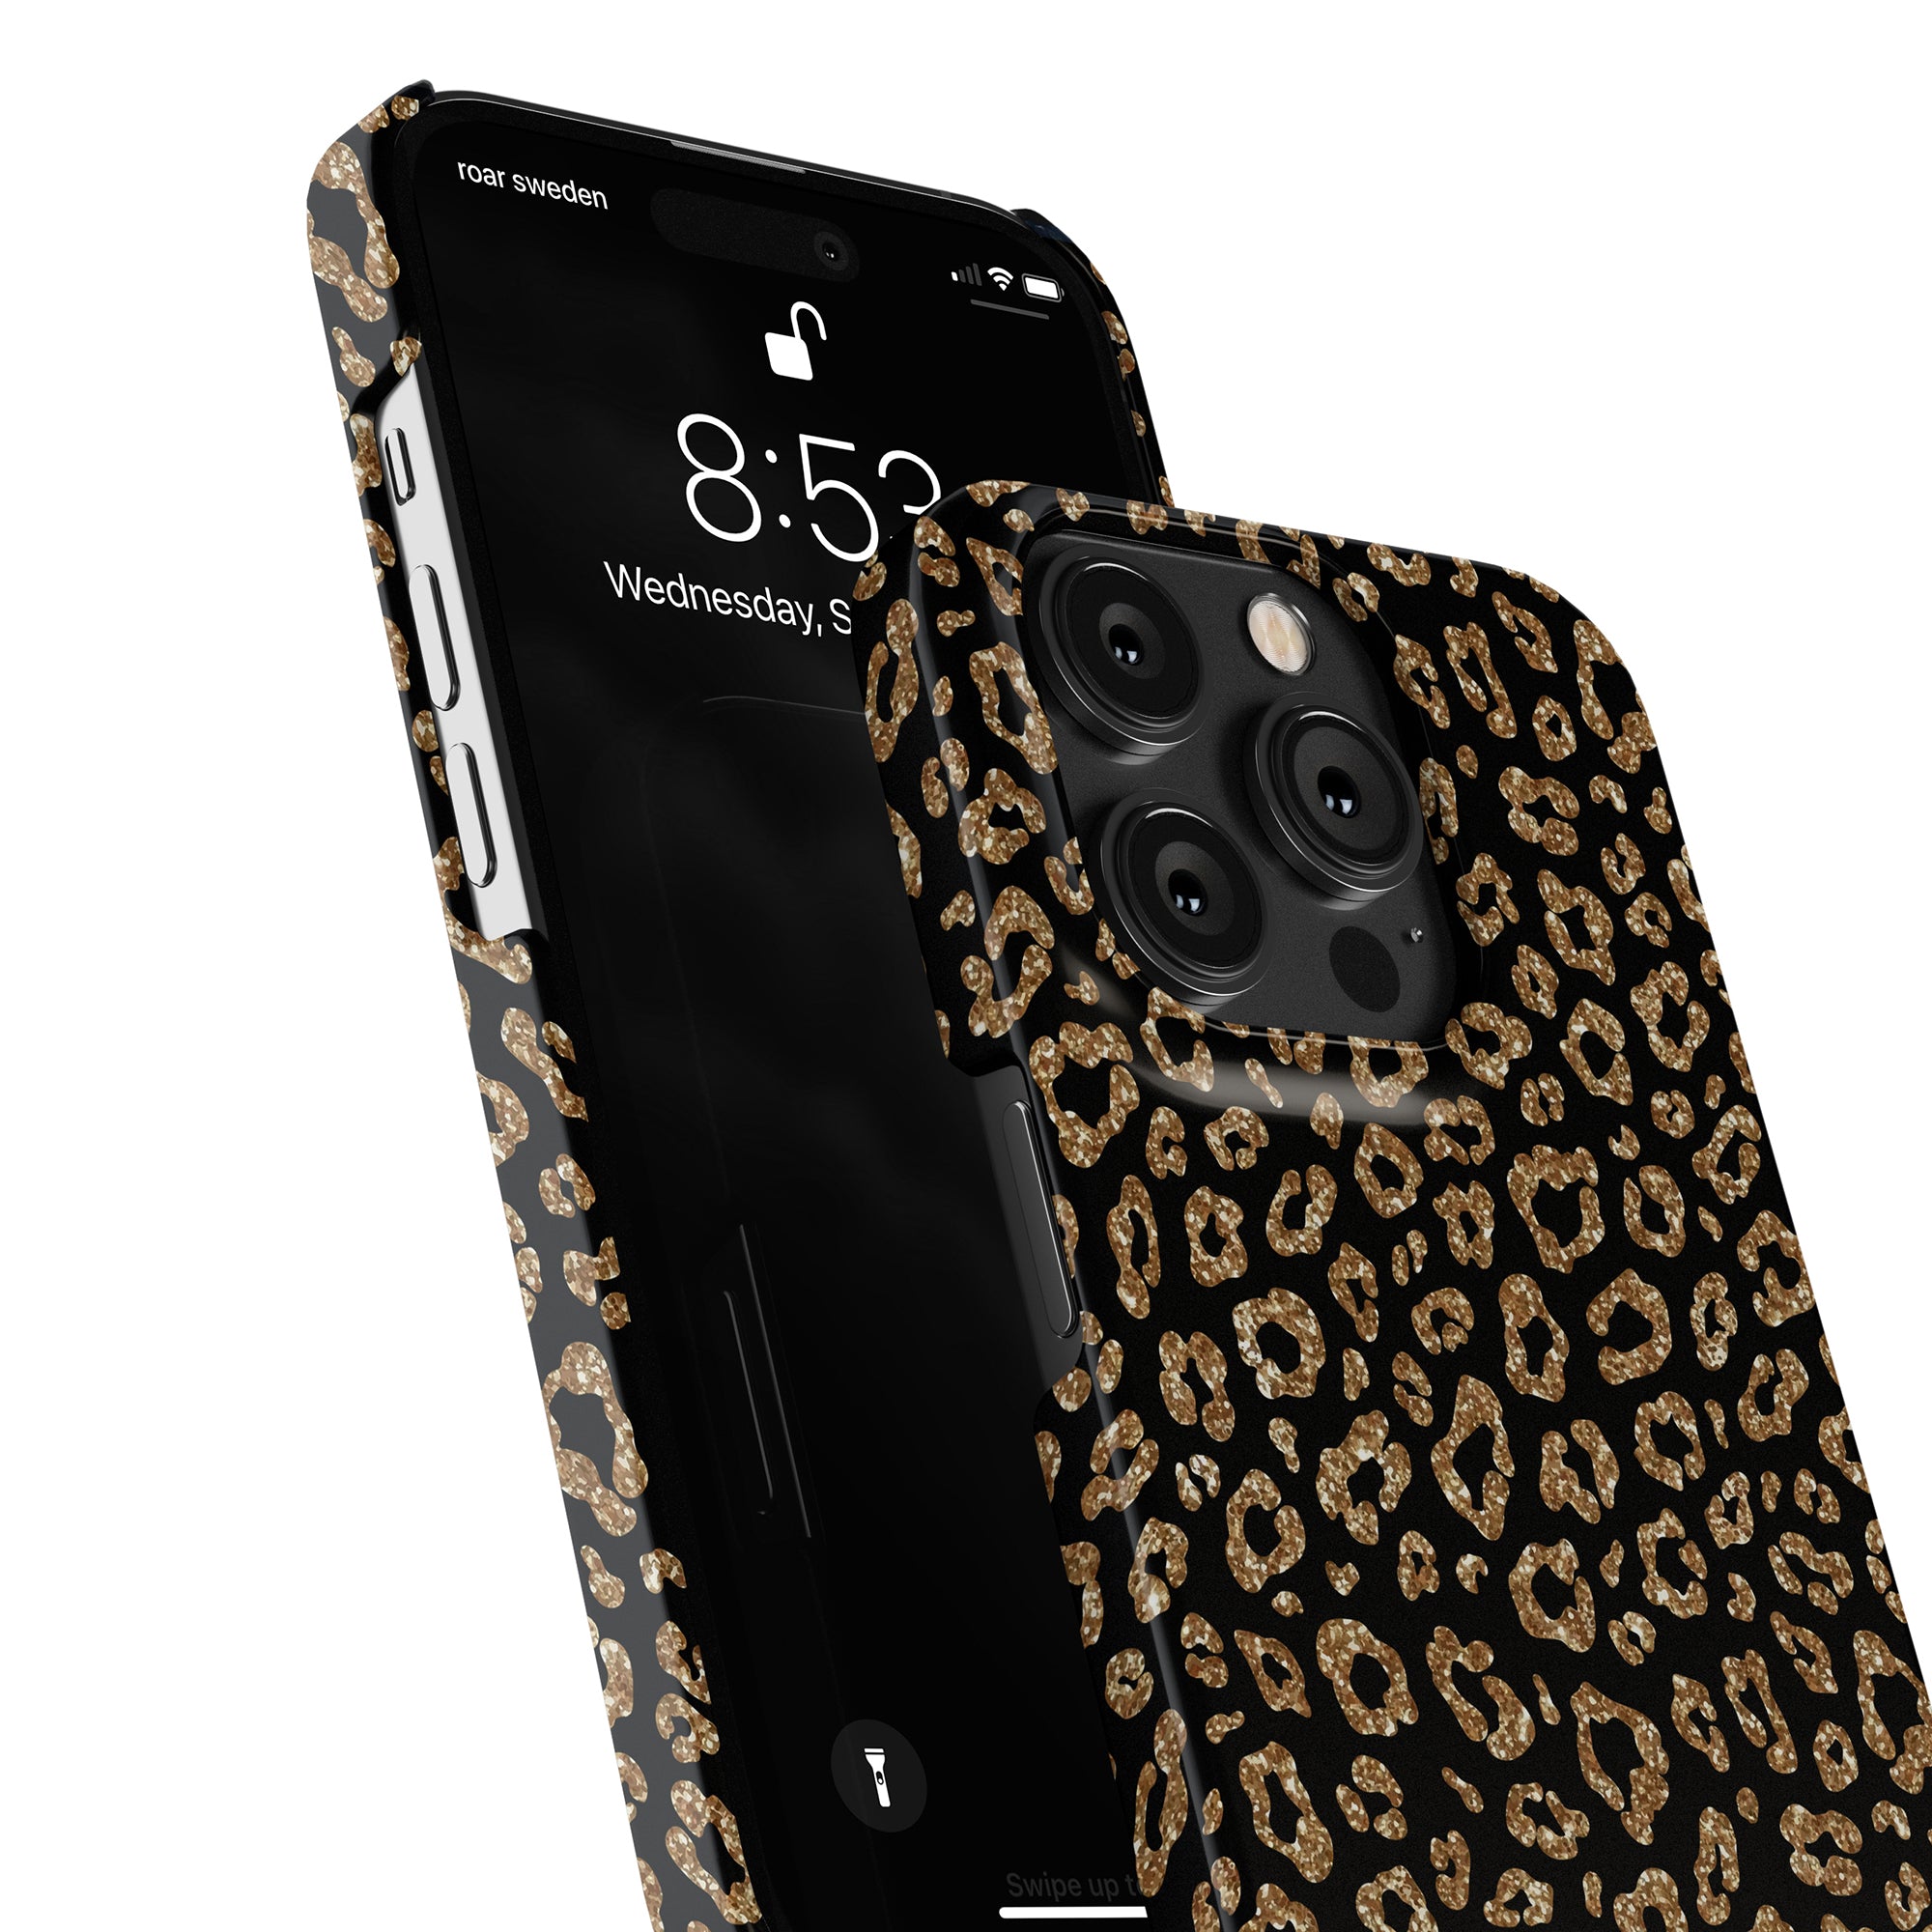 Bli snygg med detta Kitty Glitter - Slim fodral designat speciellt för iPhone 11 Pro. Med sitt glittriga leopardmönster är den perfekt för dig som är modeinriktad och älskar unik design.